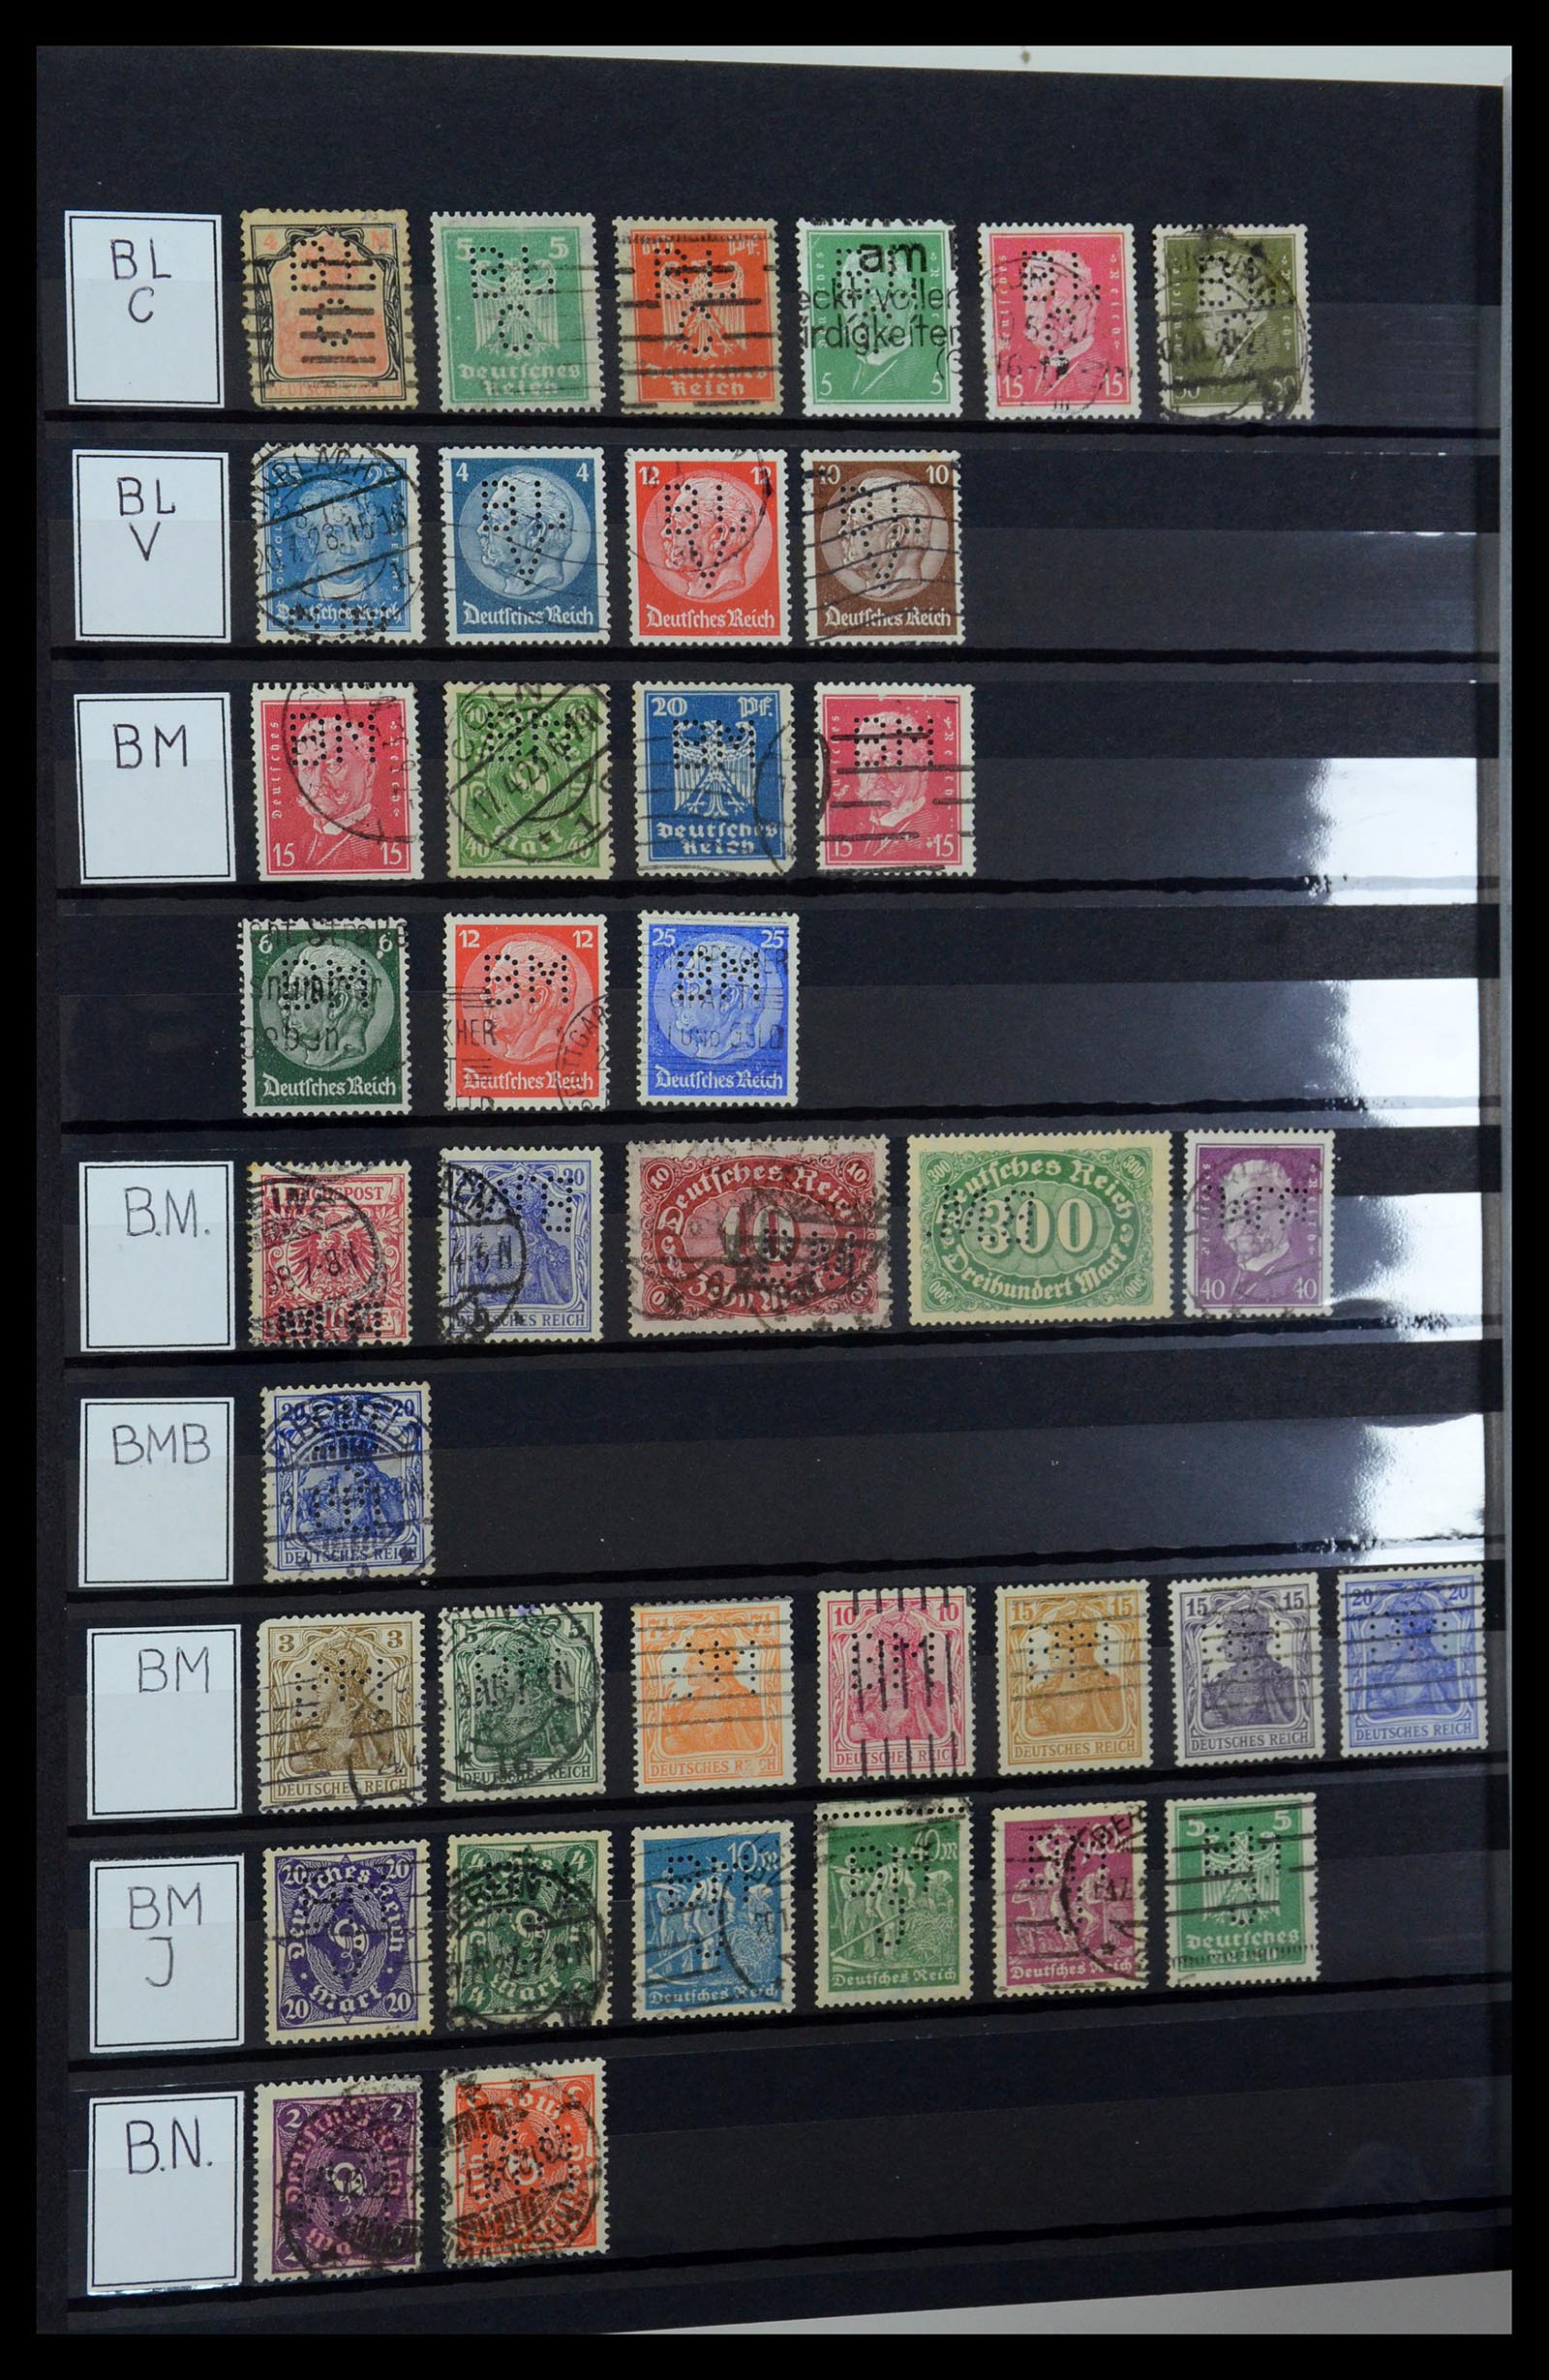 36405 046 - Stamp collection 36405 German Reich perfins 1880-1945.